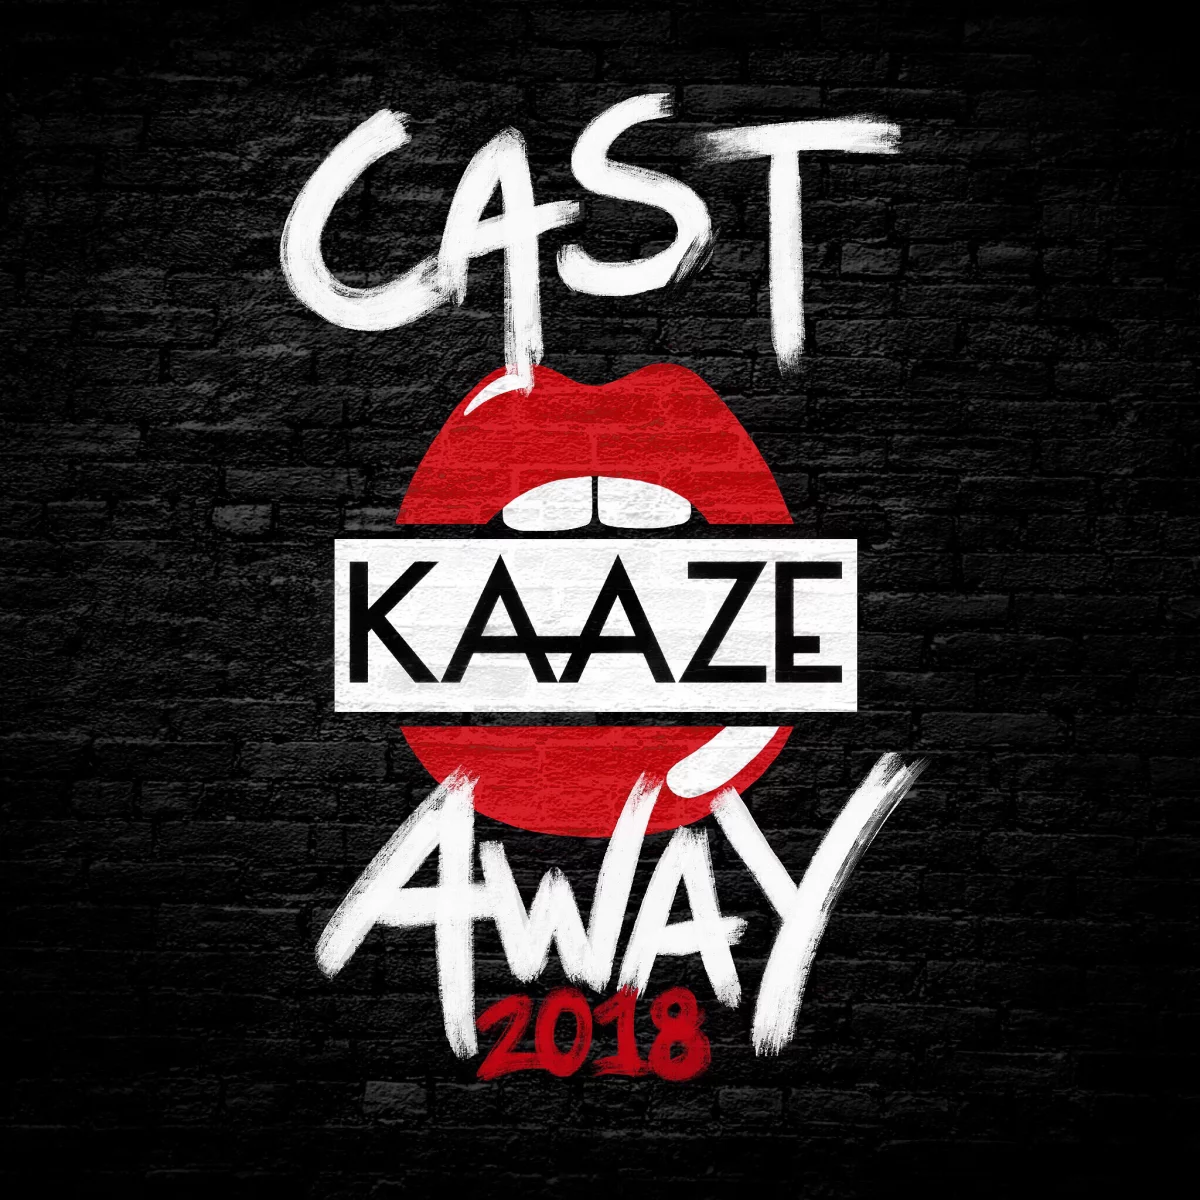 Cast Away 2018 - KAAZE⁠ 